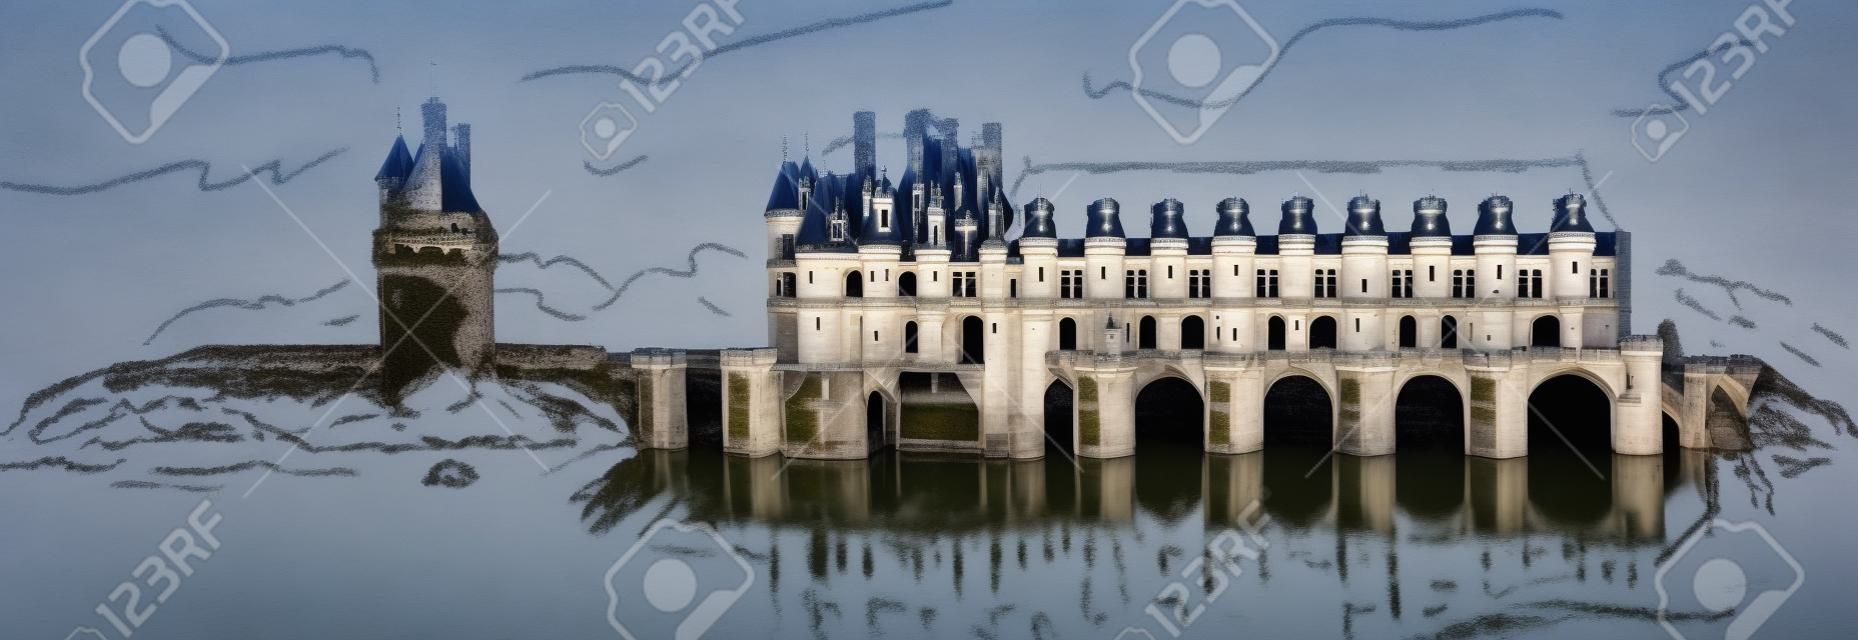 Château de Chenonceau, vallée de la Loire, France.